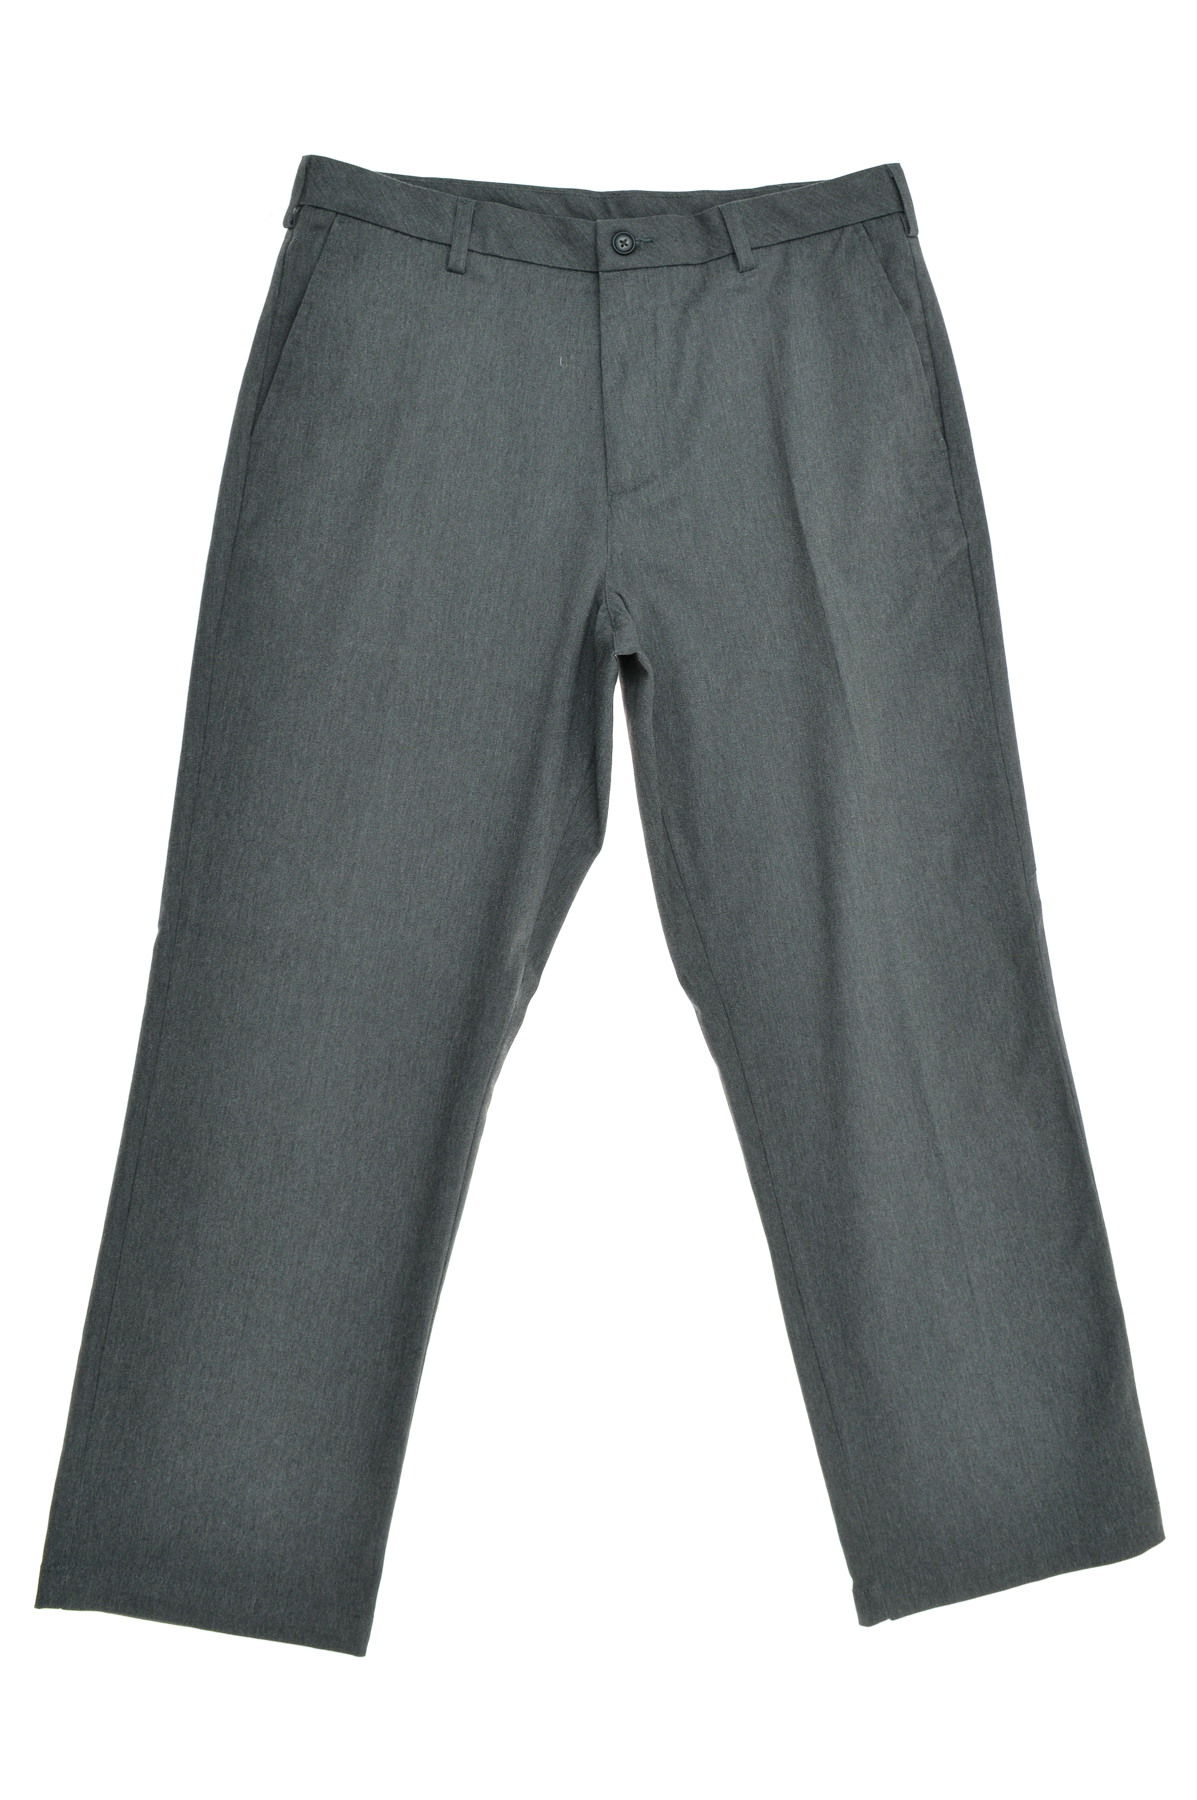 Pantalon pentru bărbați - Croft & Barrow - 0